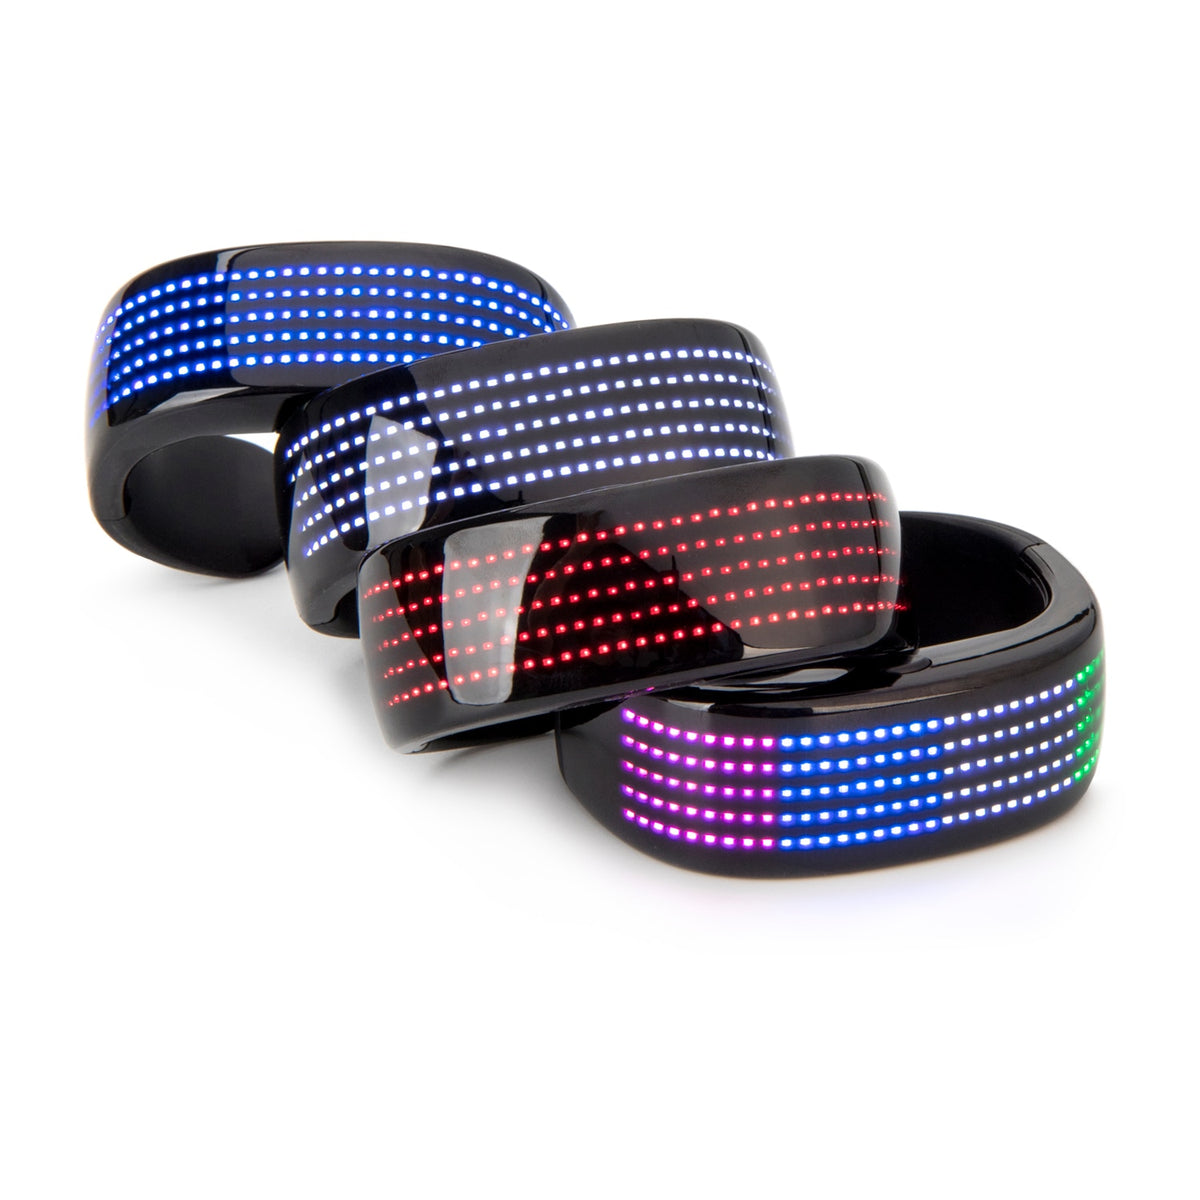 Smart RGB Wrist Cuff Bracelet - The Locker